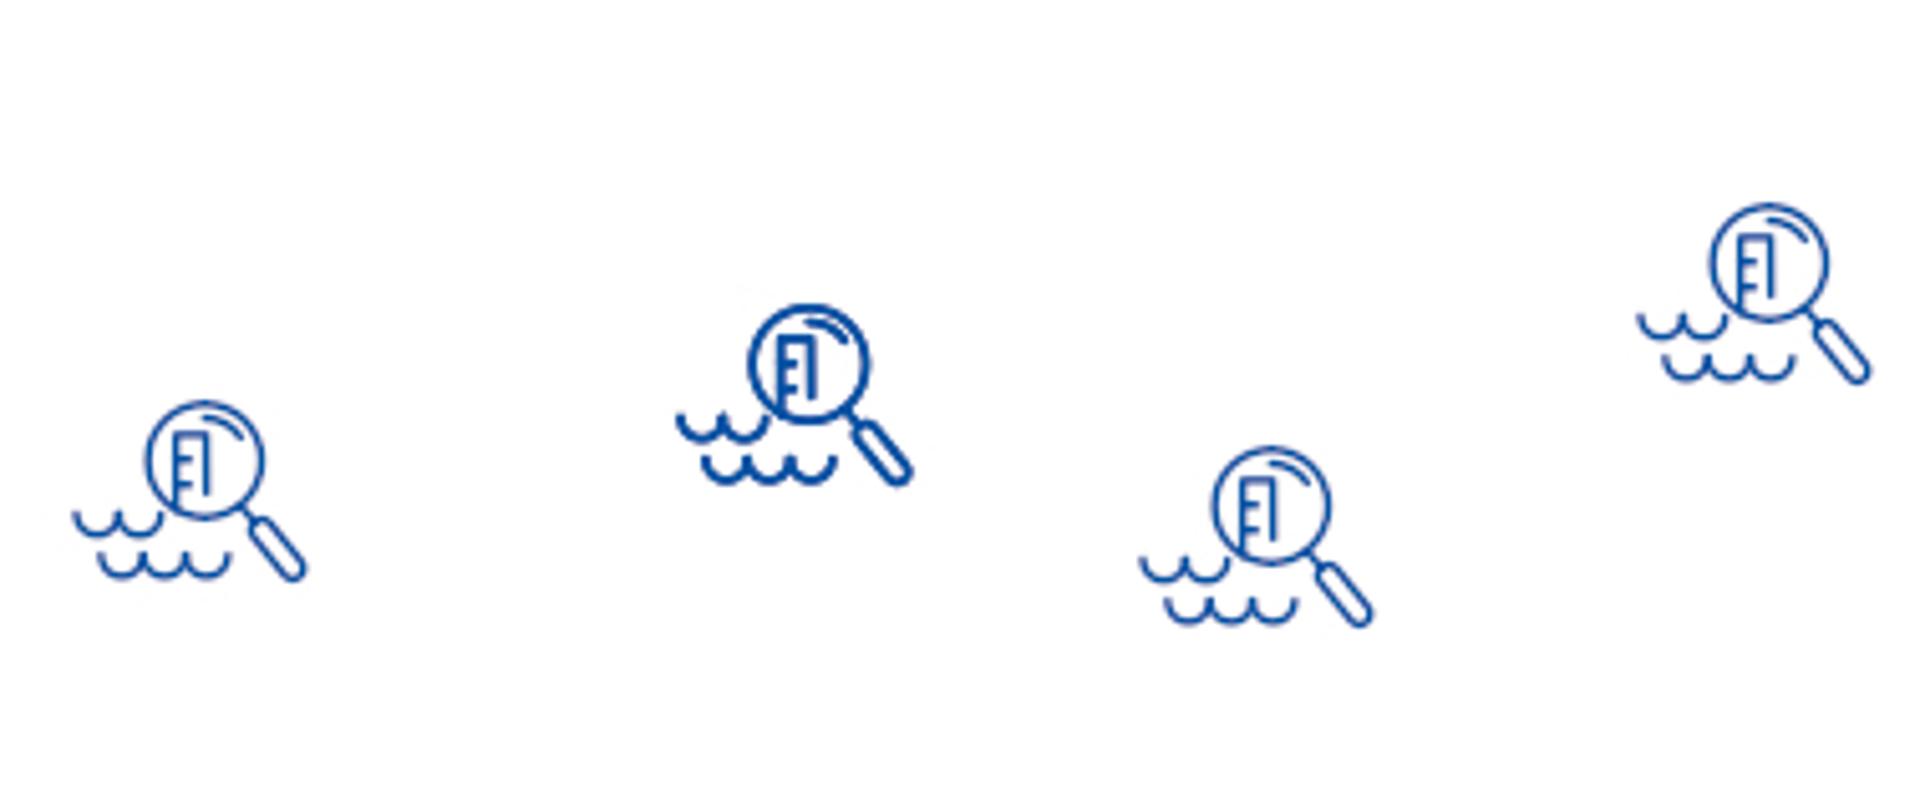 zdjęcie przedstawia po lewej stronie grafika z rysunkiem odręcznym fal wody i tych grafik jest kilkanaście, po prawej stronie grafiki na niebieskim tle napis TU ZNAJDUJĄ SIĘ KOMUNIKATY DOTYCZĄCE PRZYDATNOŚCI WODY